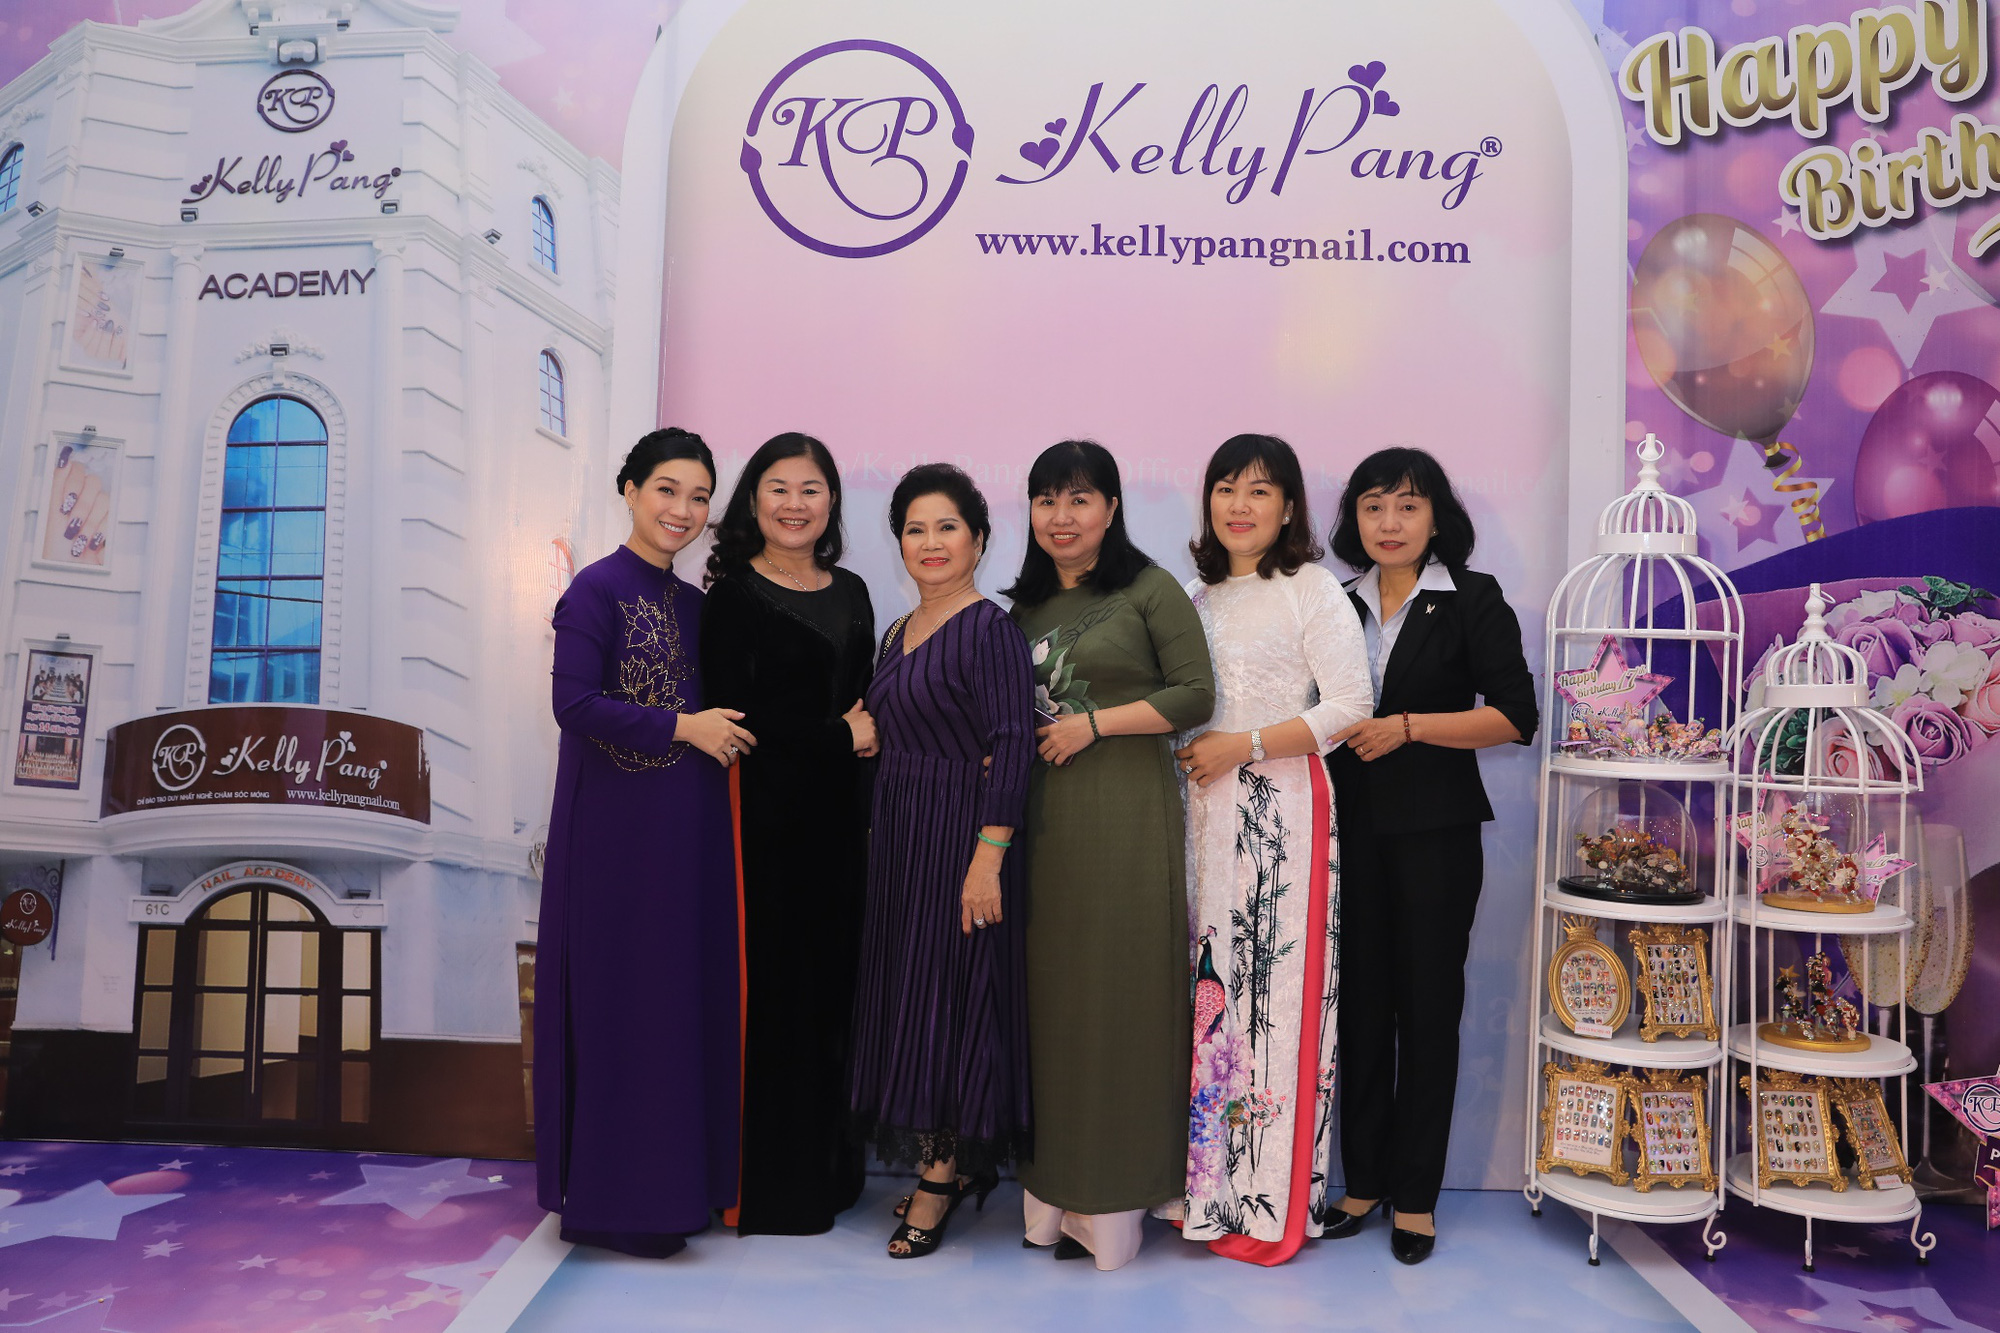 Câu chuyện thành công của Kelly Pang truyền cảm hứng với những ai muốn khởi nghiệp với nghề nails - Ảnh 1.